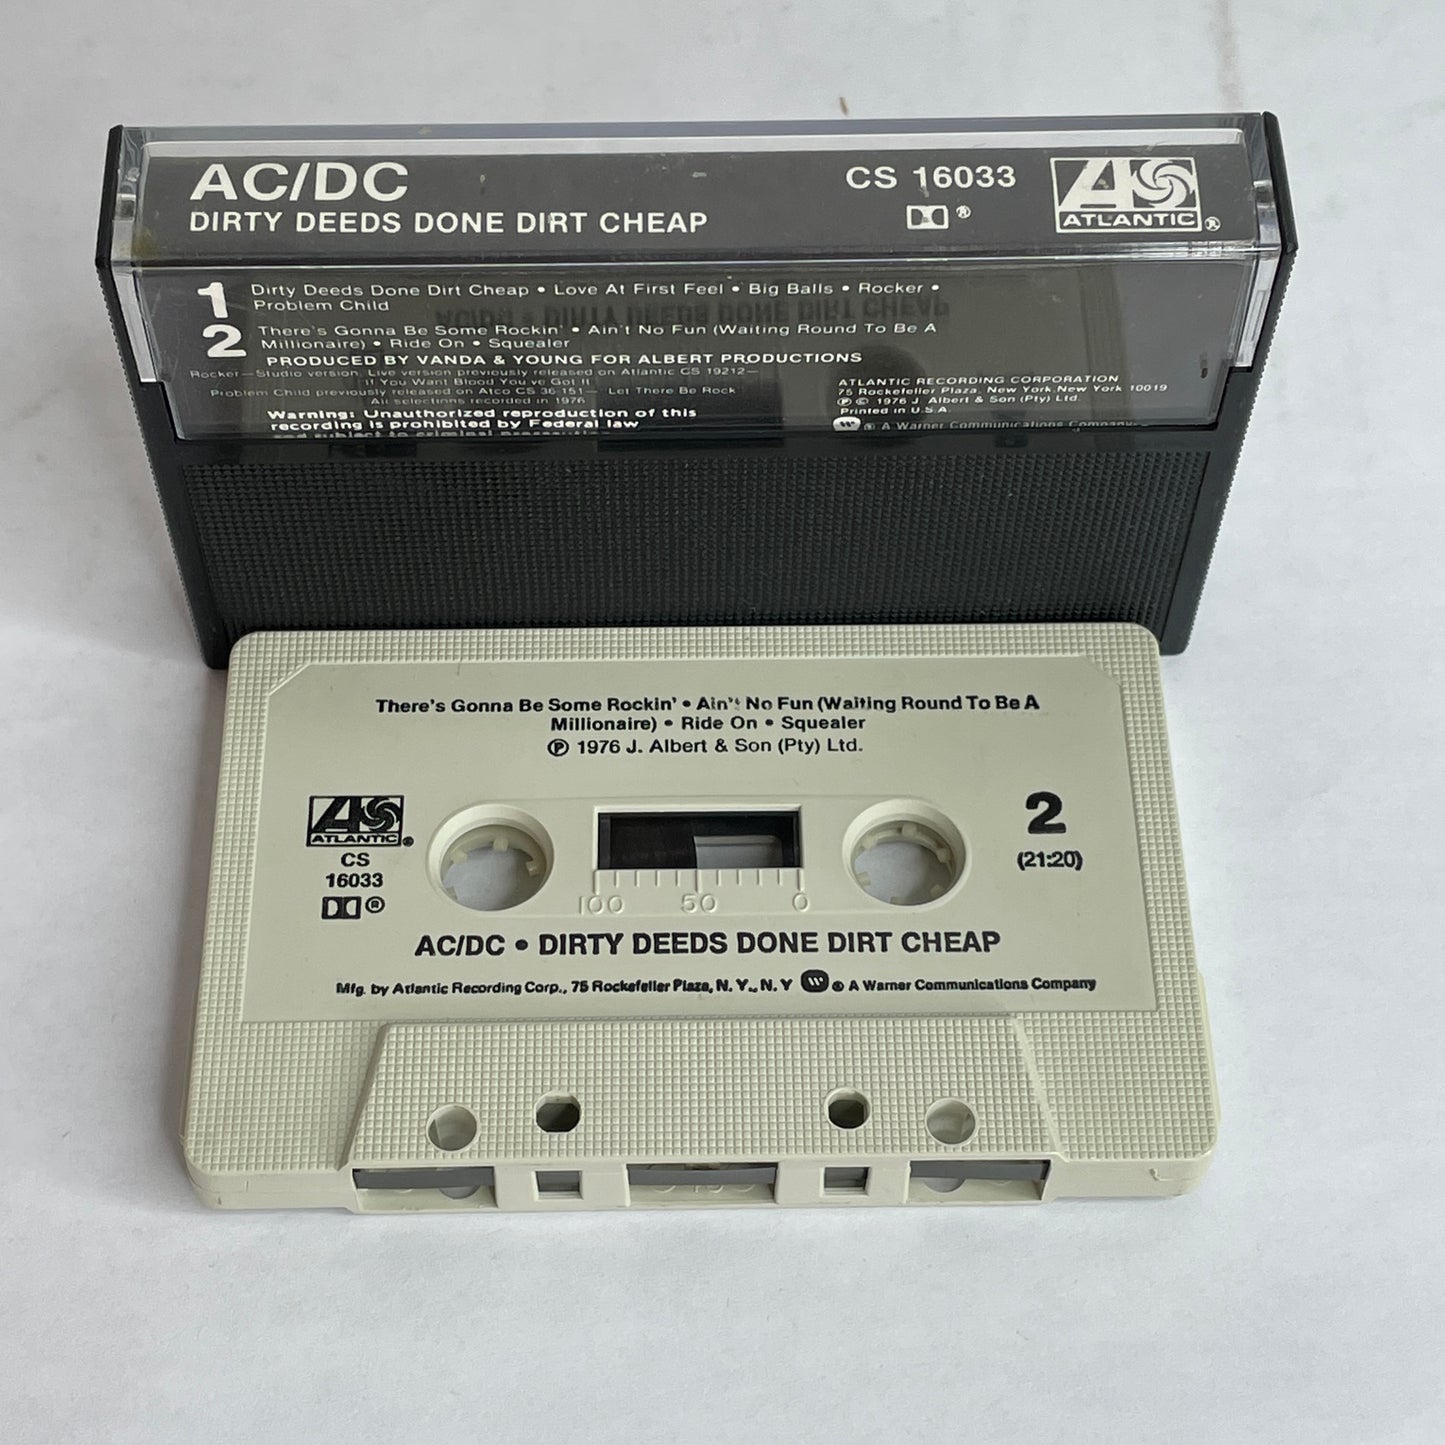 AC/DC - Dirty Deeds Done Dirt Cheap original cassette tape